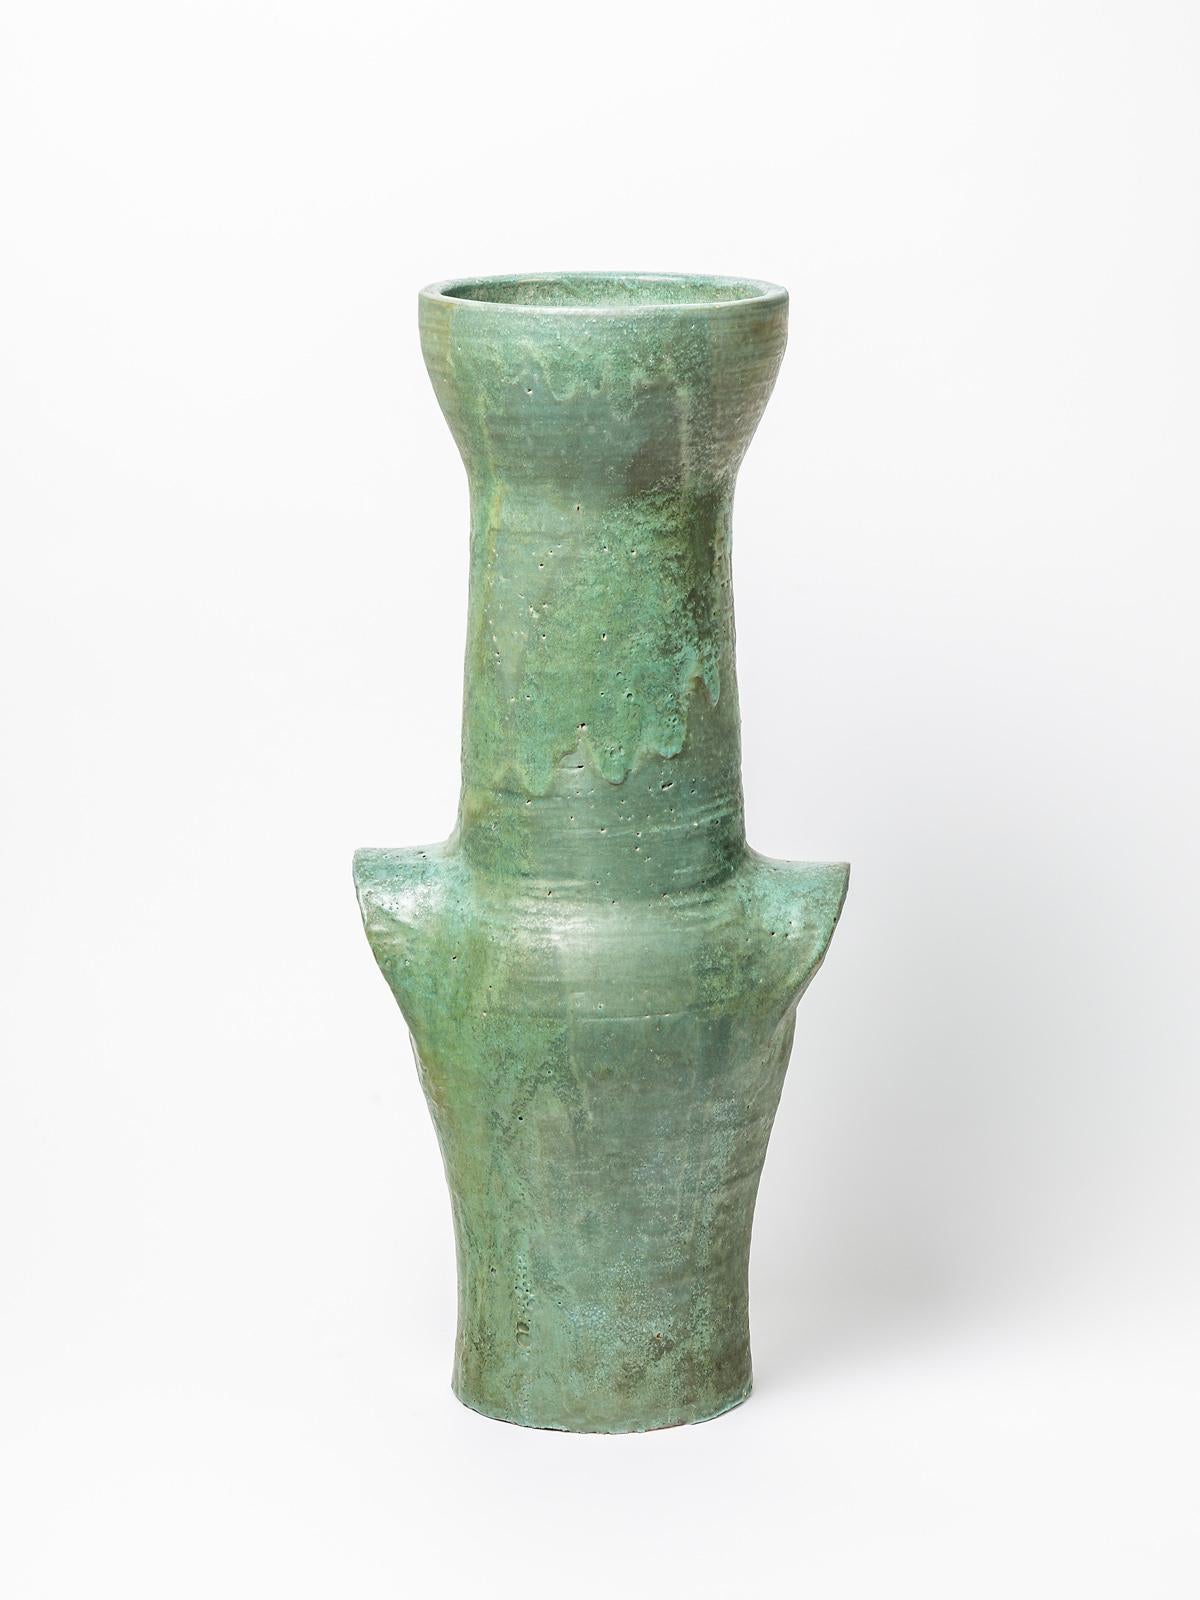 Un grand vase en céramique avec une décoration en glaçure verte dans le style de Roger Capron.
Conditions d'origine parfaites.
Circa 1960.